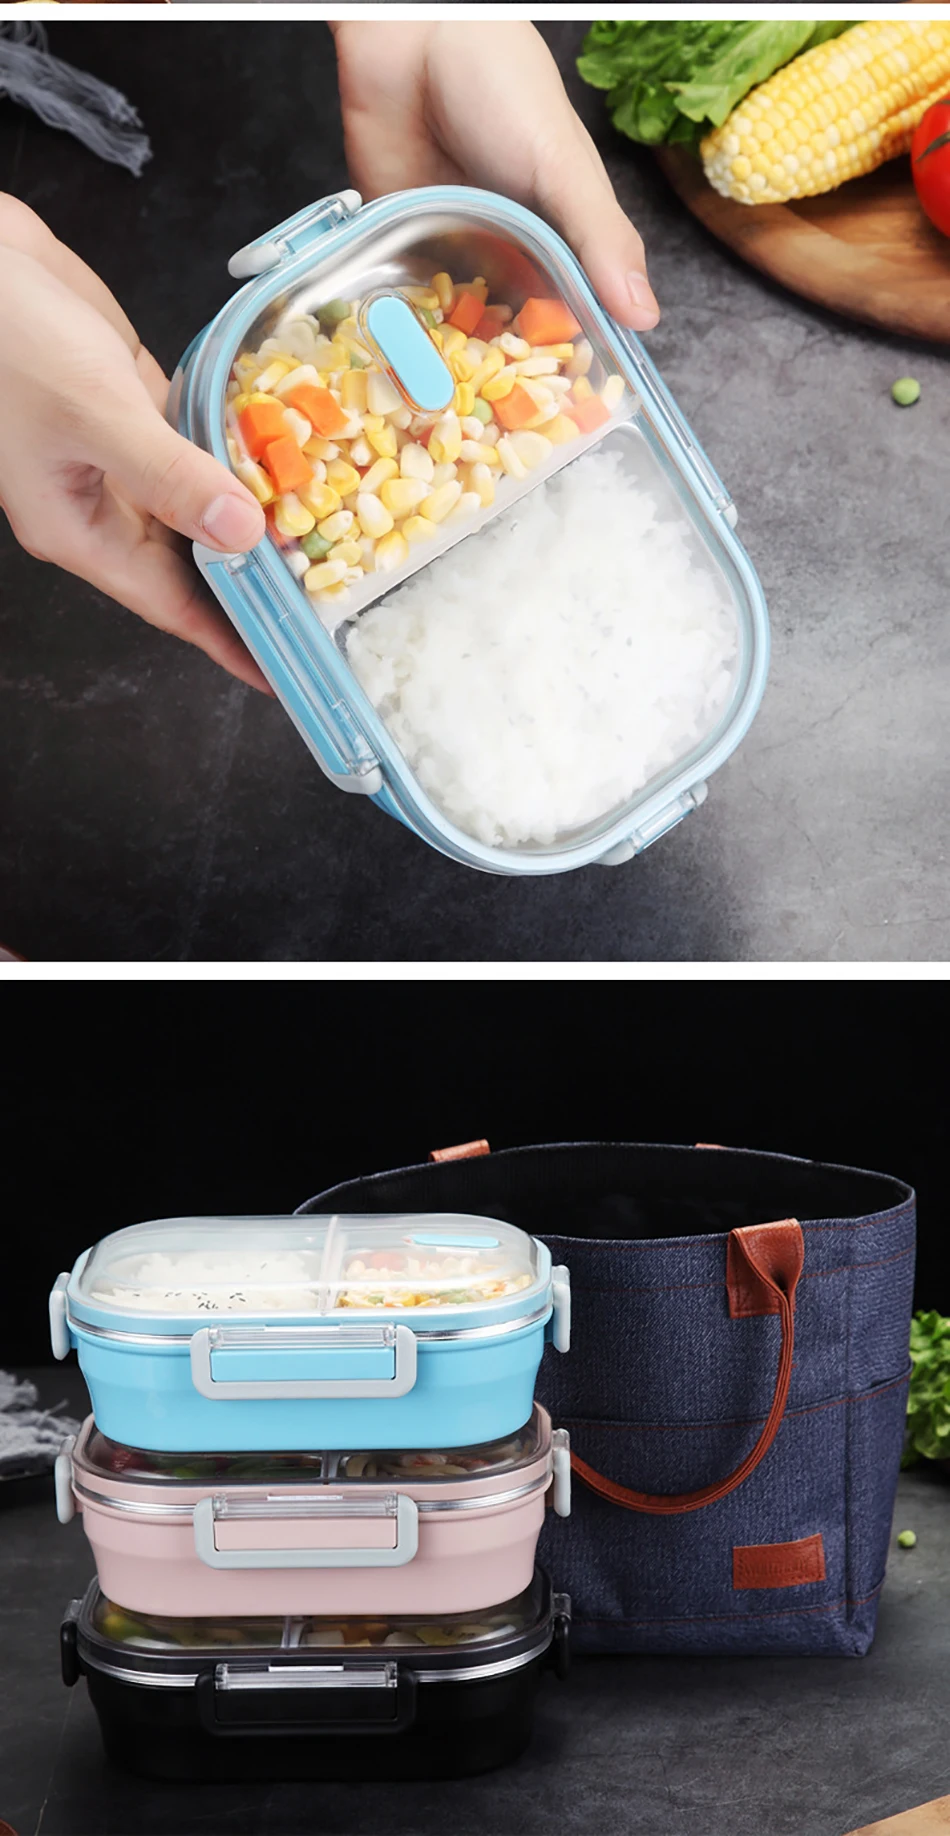 Baispo Bento Box японский стиль Портативный Ланч-бокс для детей Кухонные принадлежности герметичный контейнер для еды для пикника и школы 304